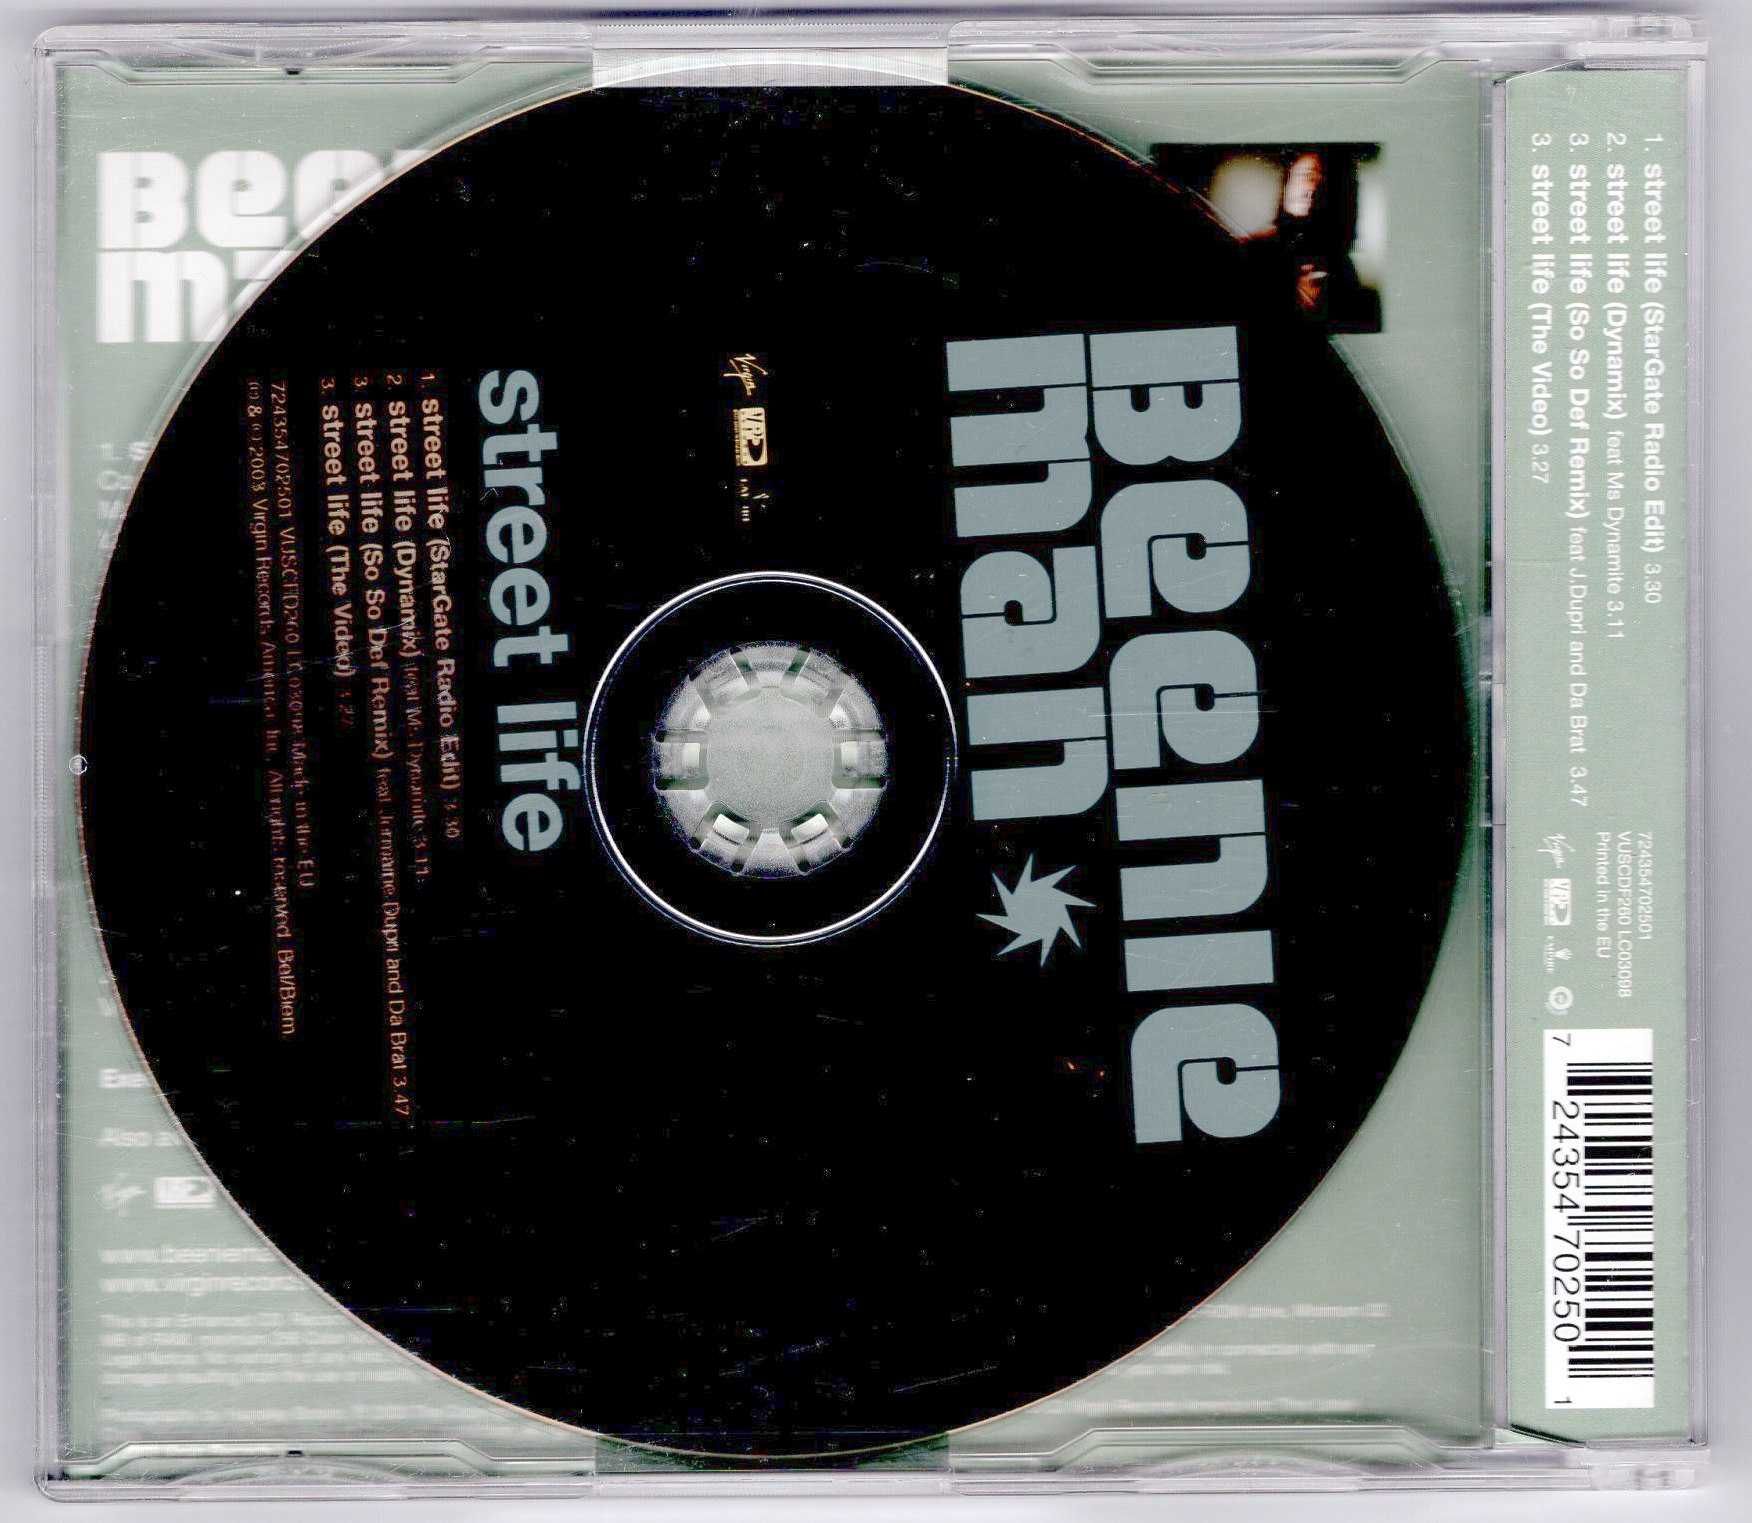 Beenie Man - Street Life (CD, Maxi Singiel)